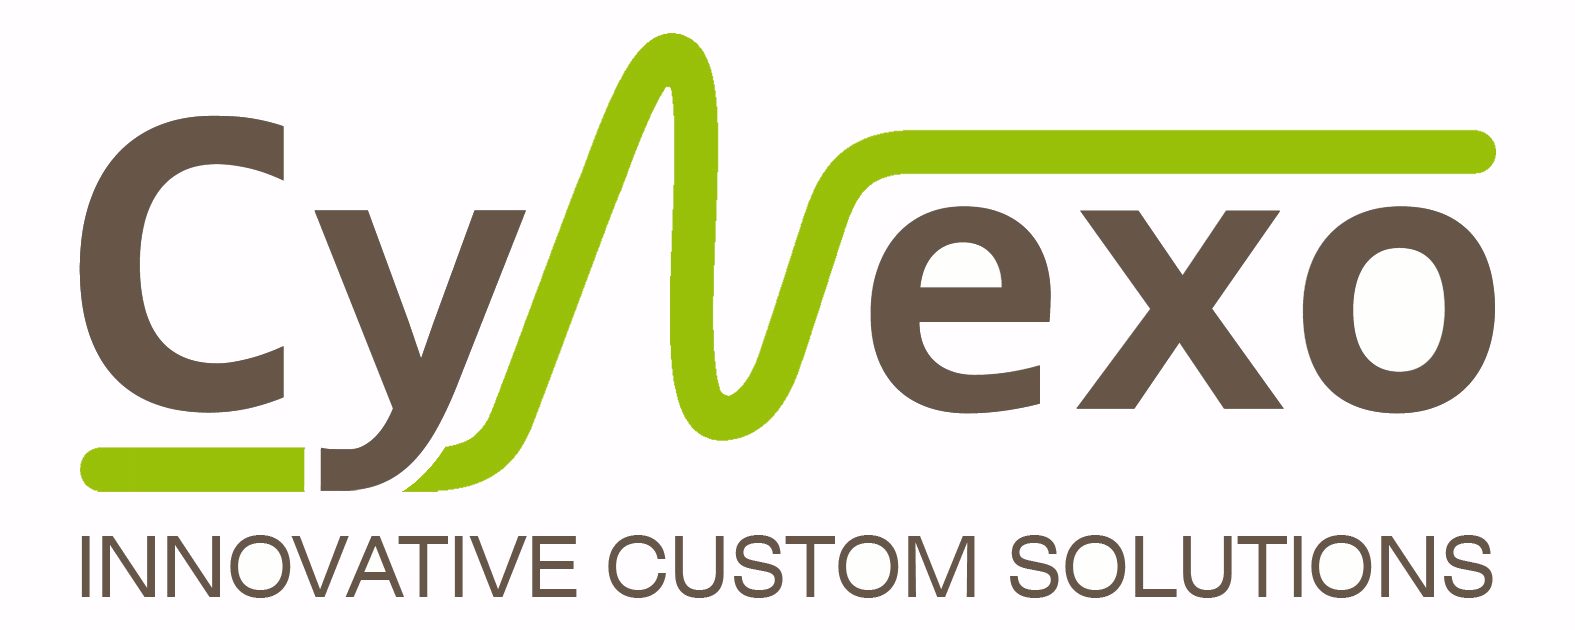 CyNexo logo